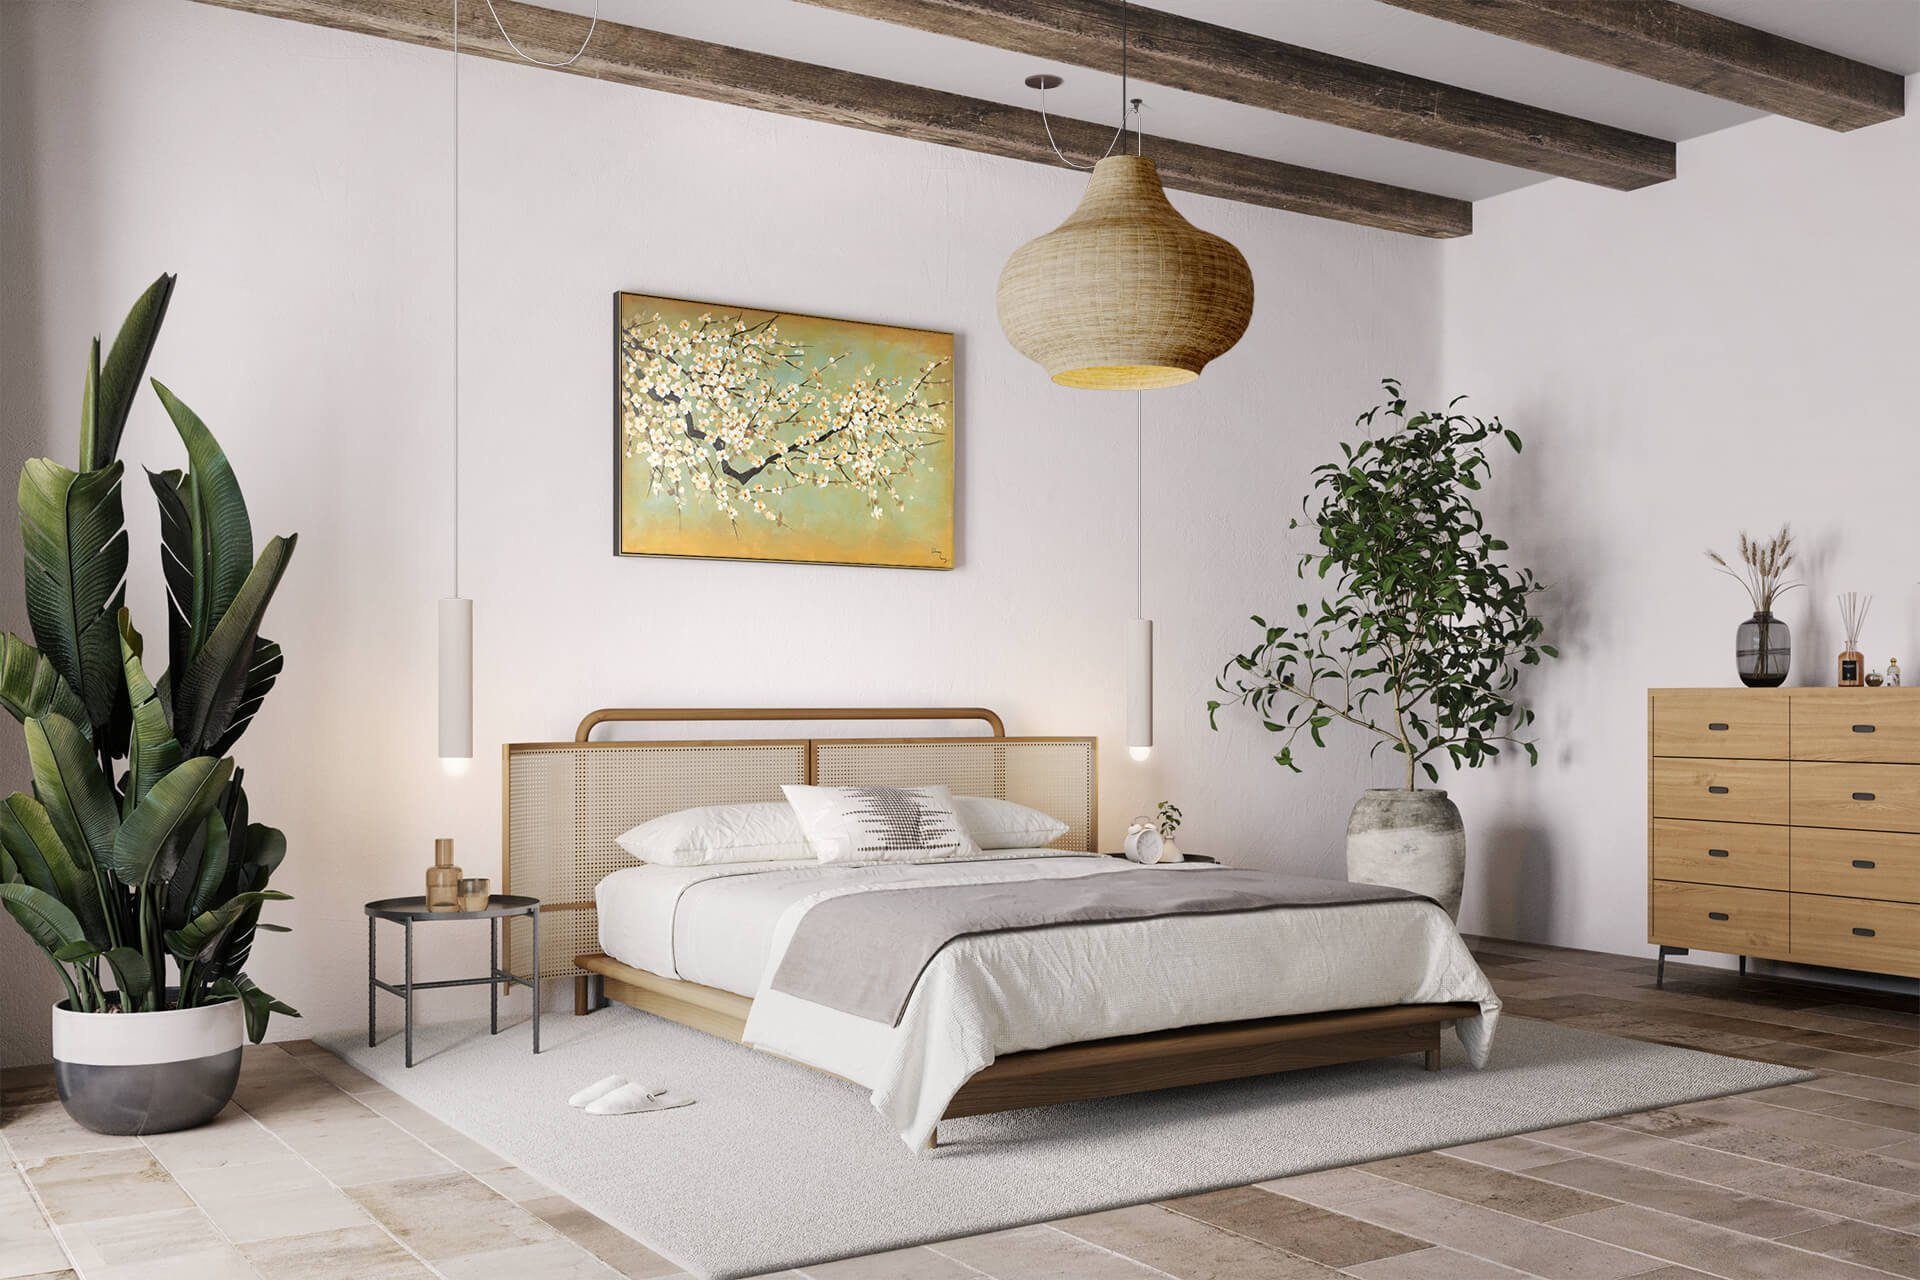 gelb KUNSTLOFT Wohnzimmer 120x80 weiß, Leinwandbild Wandbild Gemälde Kirschblüten 100% cm, HANDGEMALT